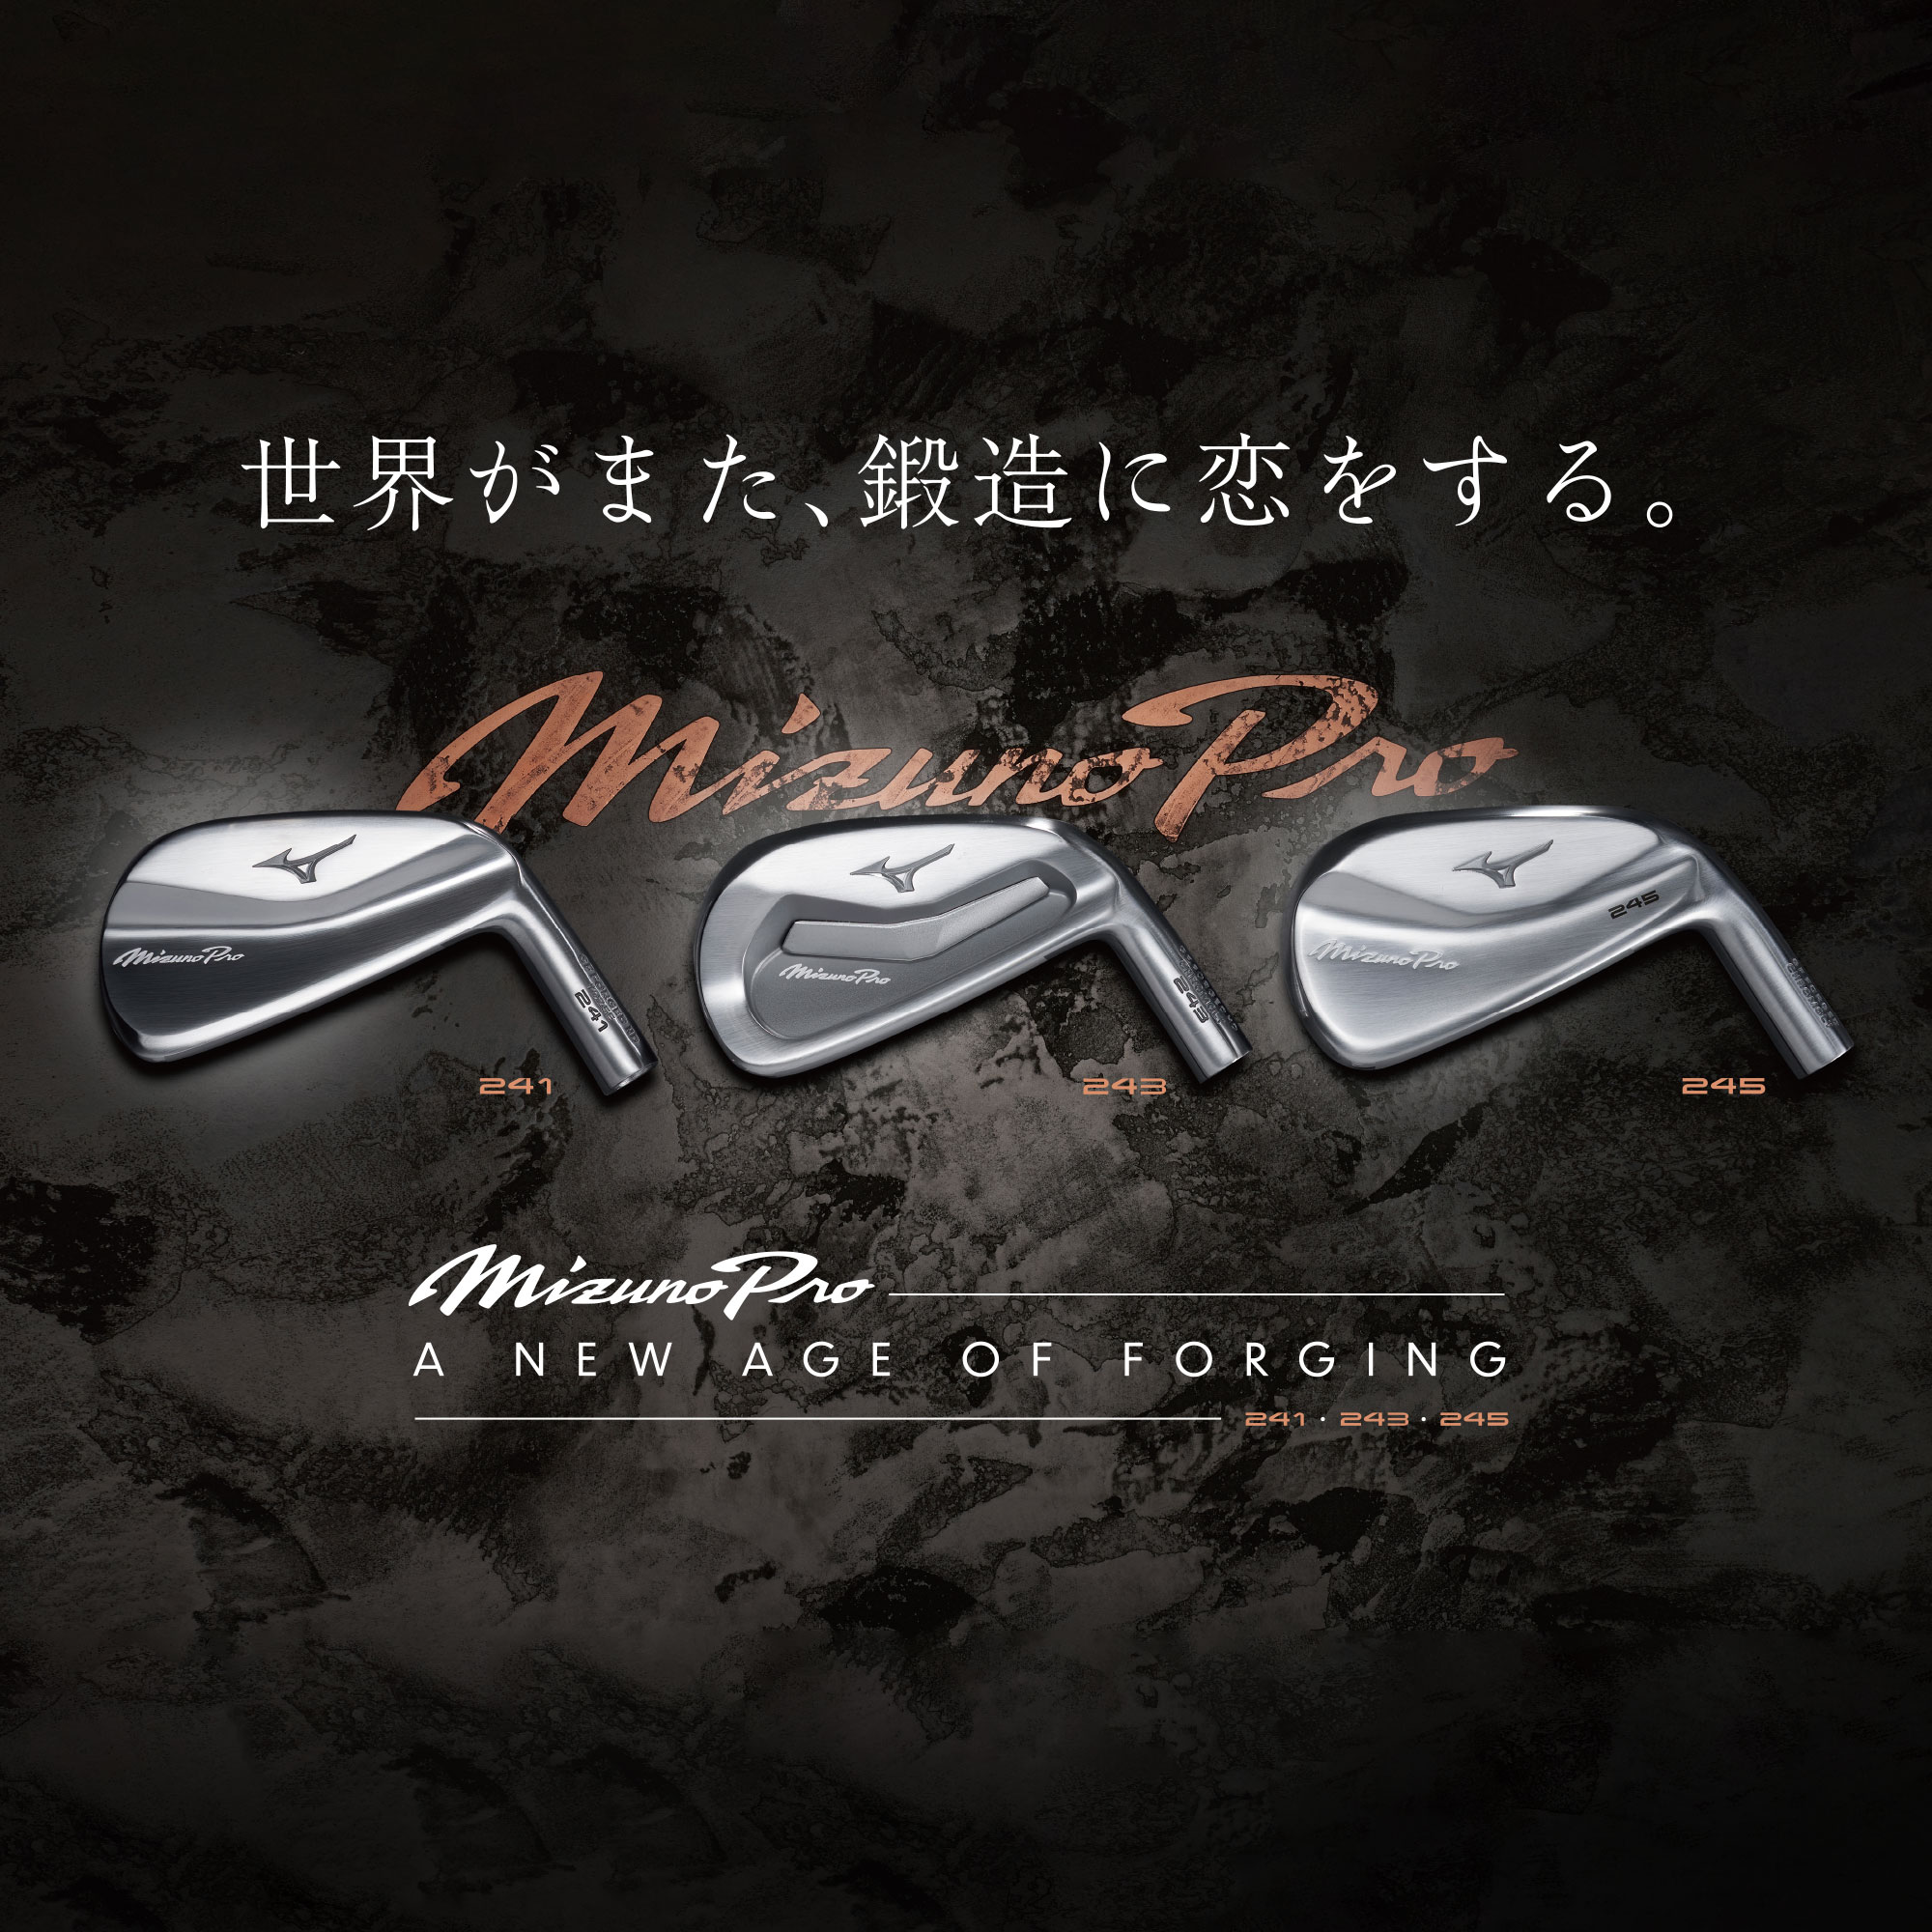 Mizuno Pro 245 アイアン 単品(No.4、GW)(N.S.PRO MODUS3 TOUR105 スチールシャフト 付)|5KJXB33370|クラブ|ゴルフ|ミズノ公式オンライン